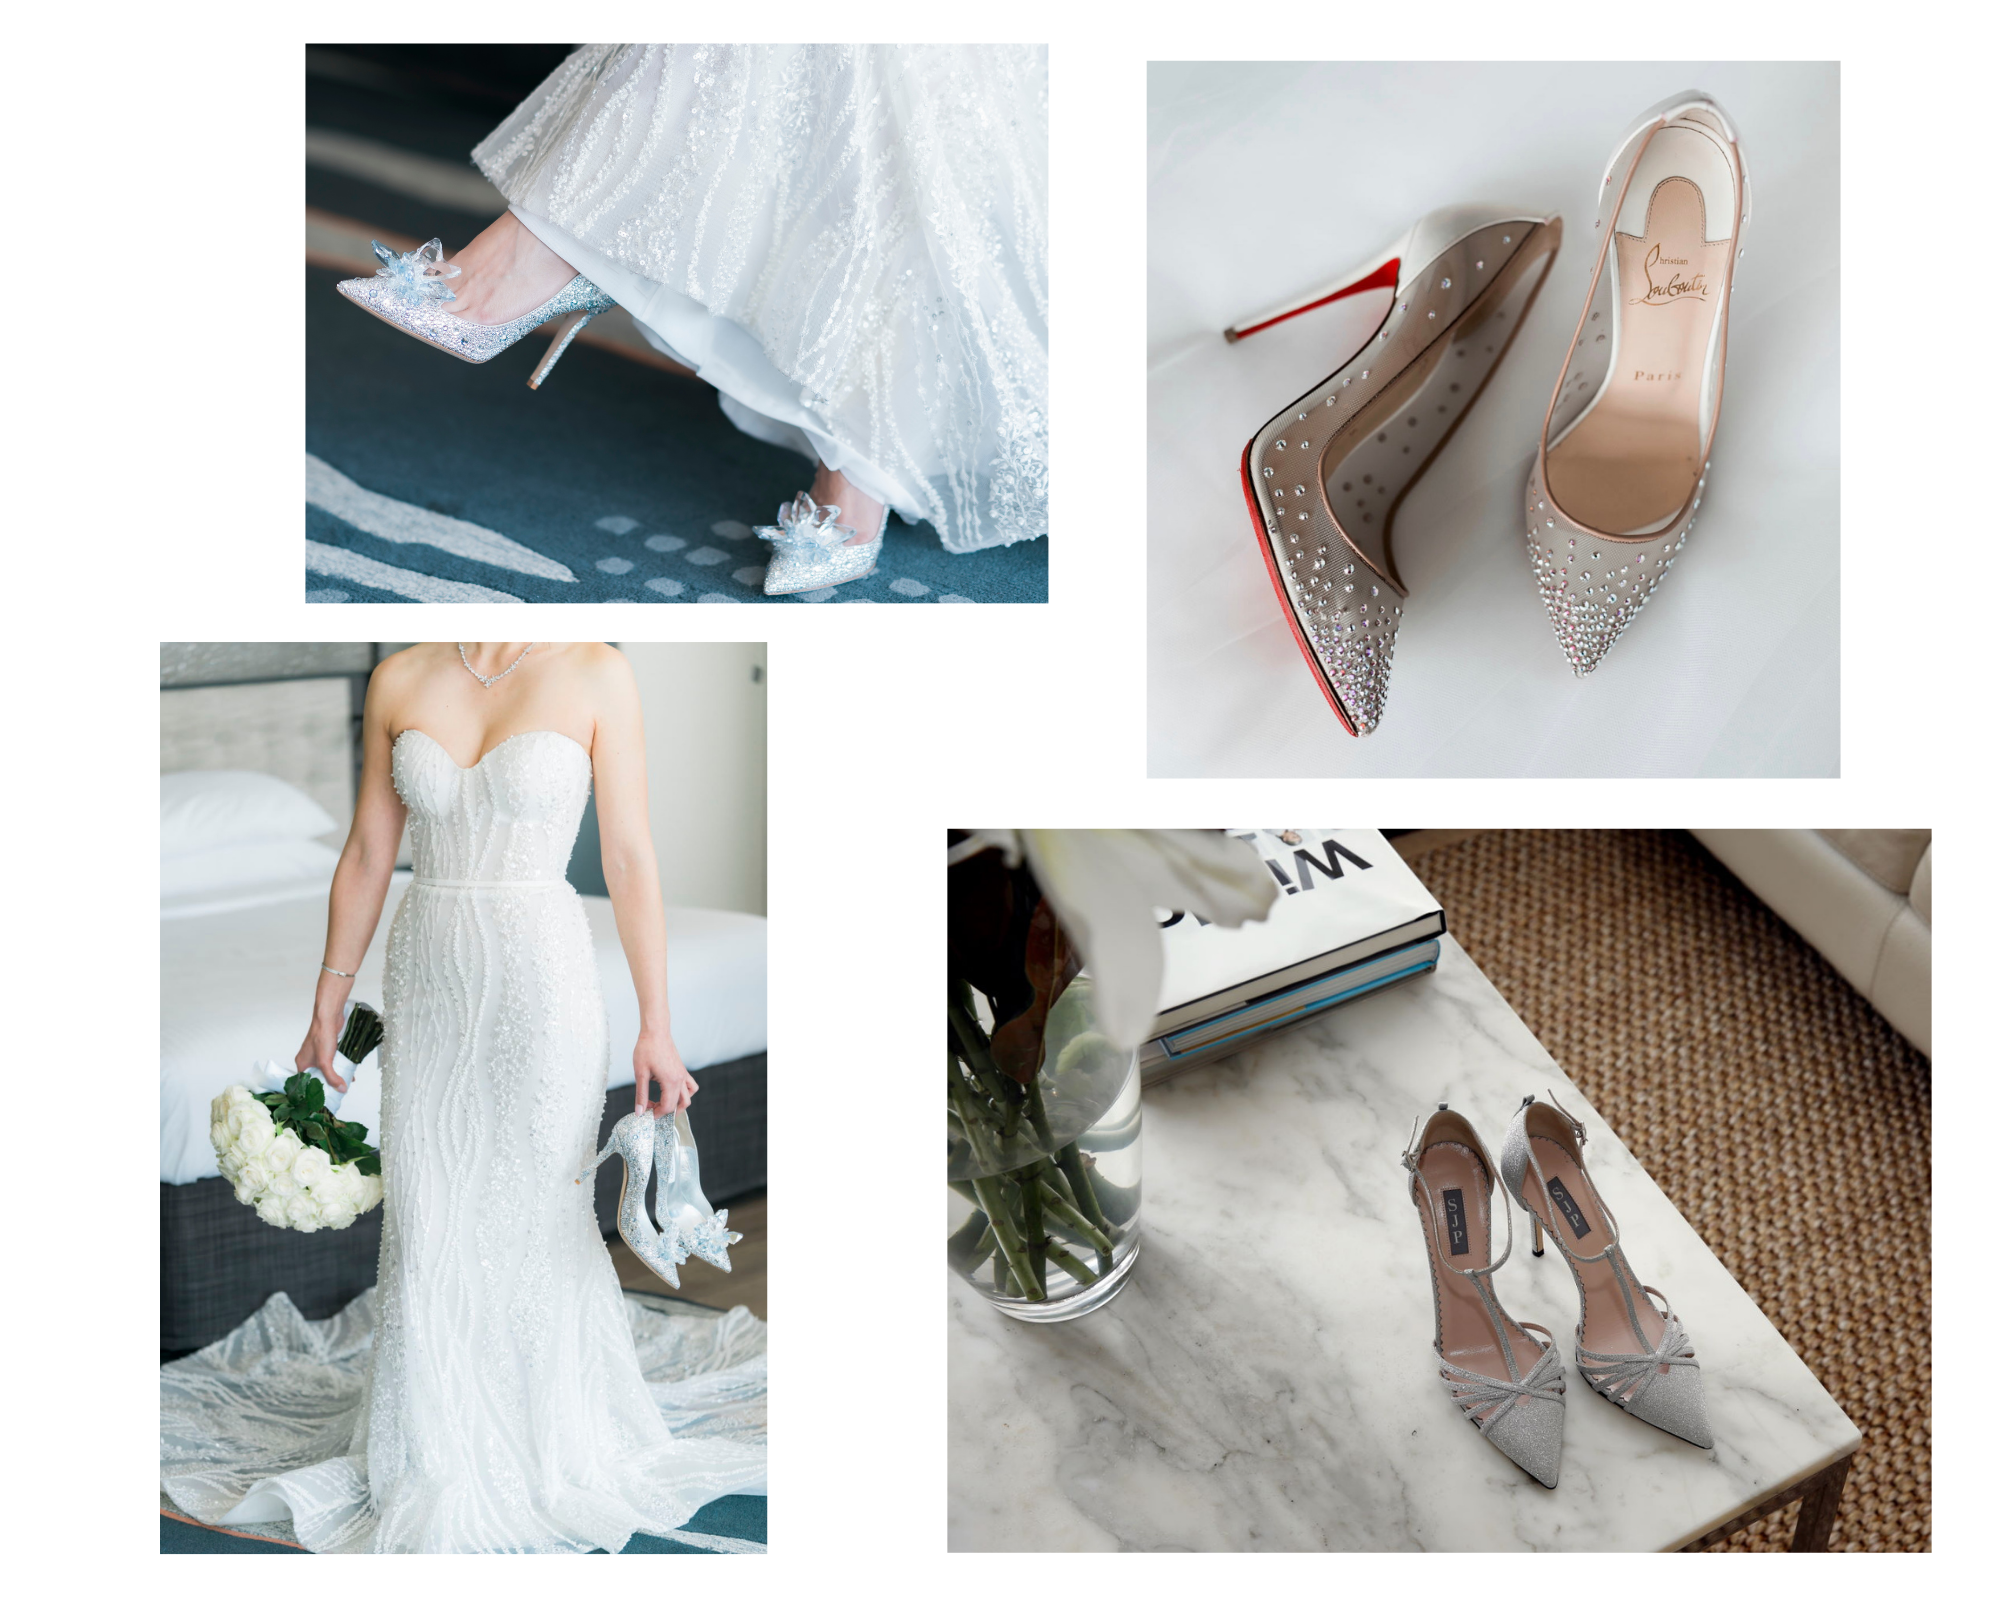 Bloomsbury Wedding Dress - Wedding Atelier NYC Suzanne Neville